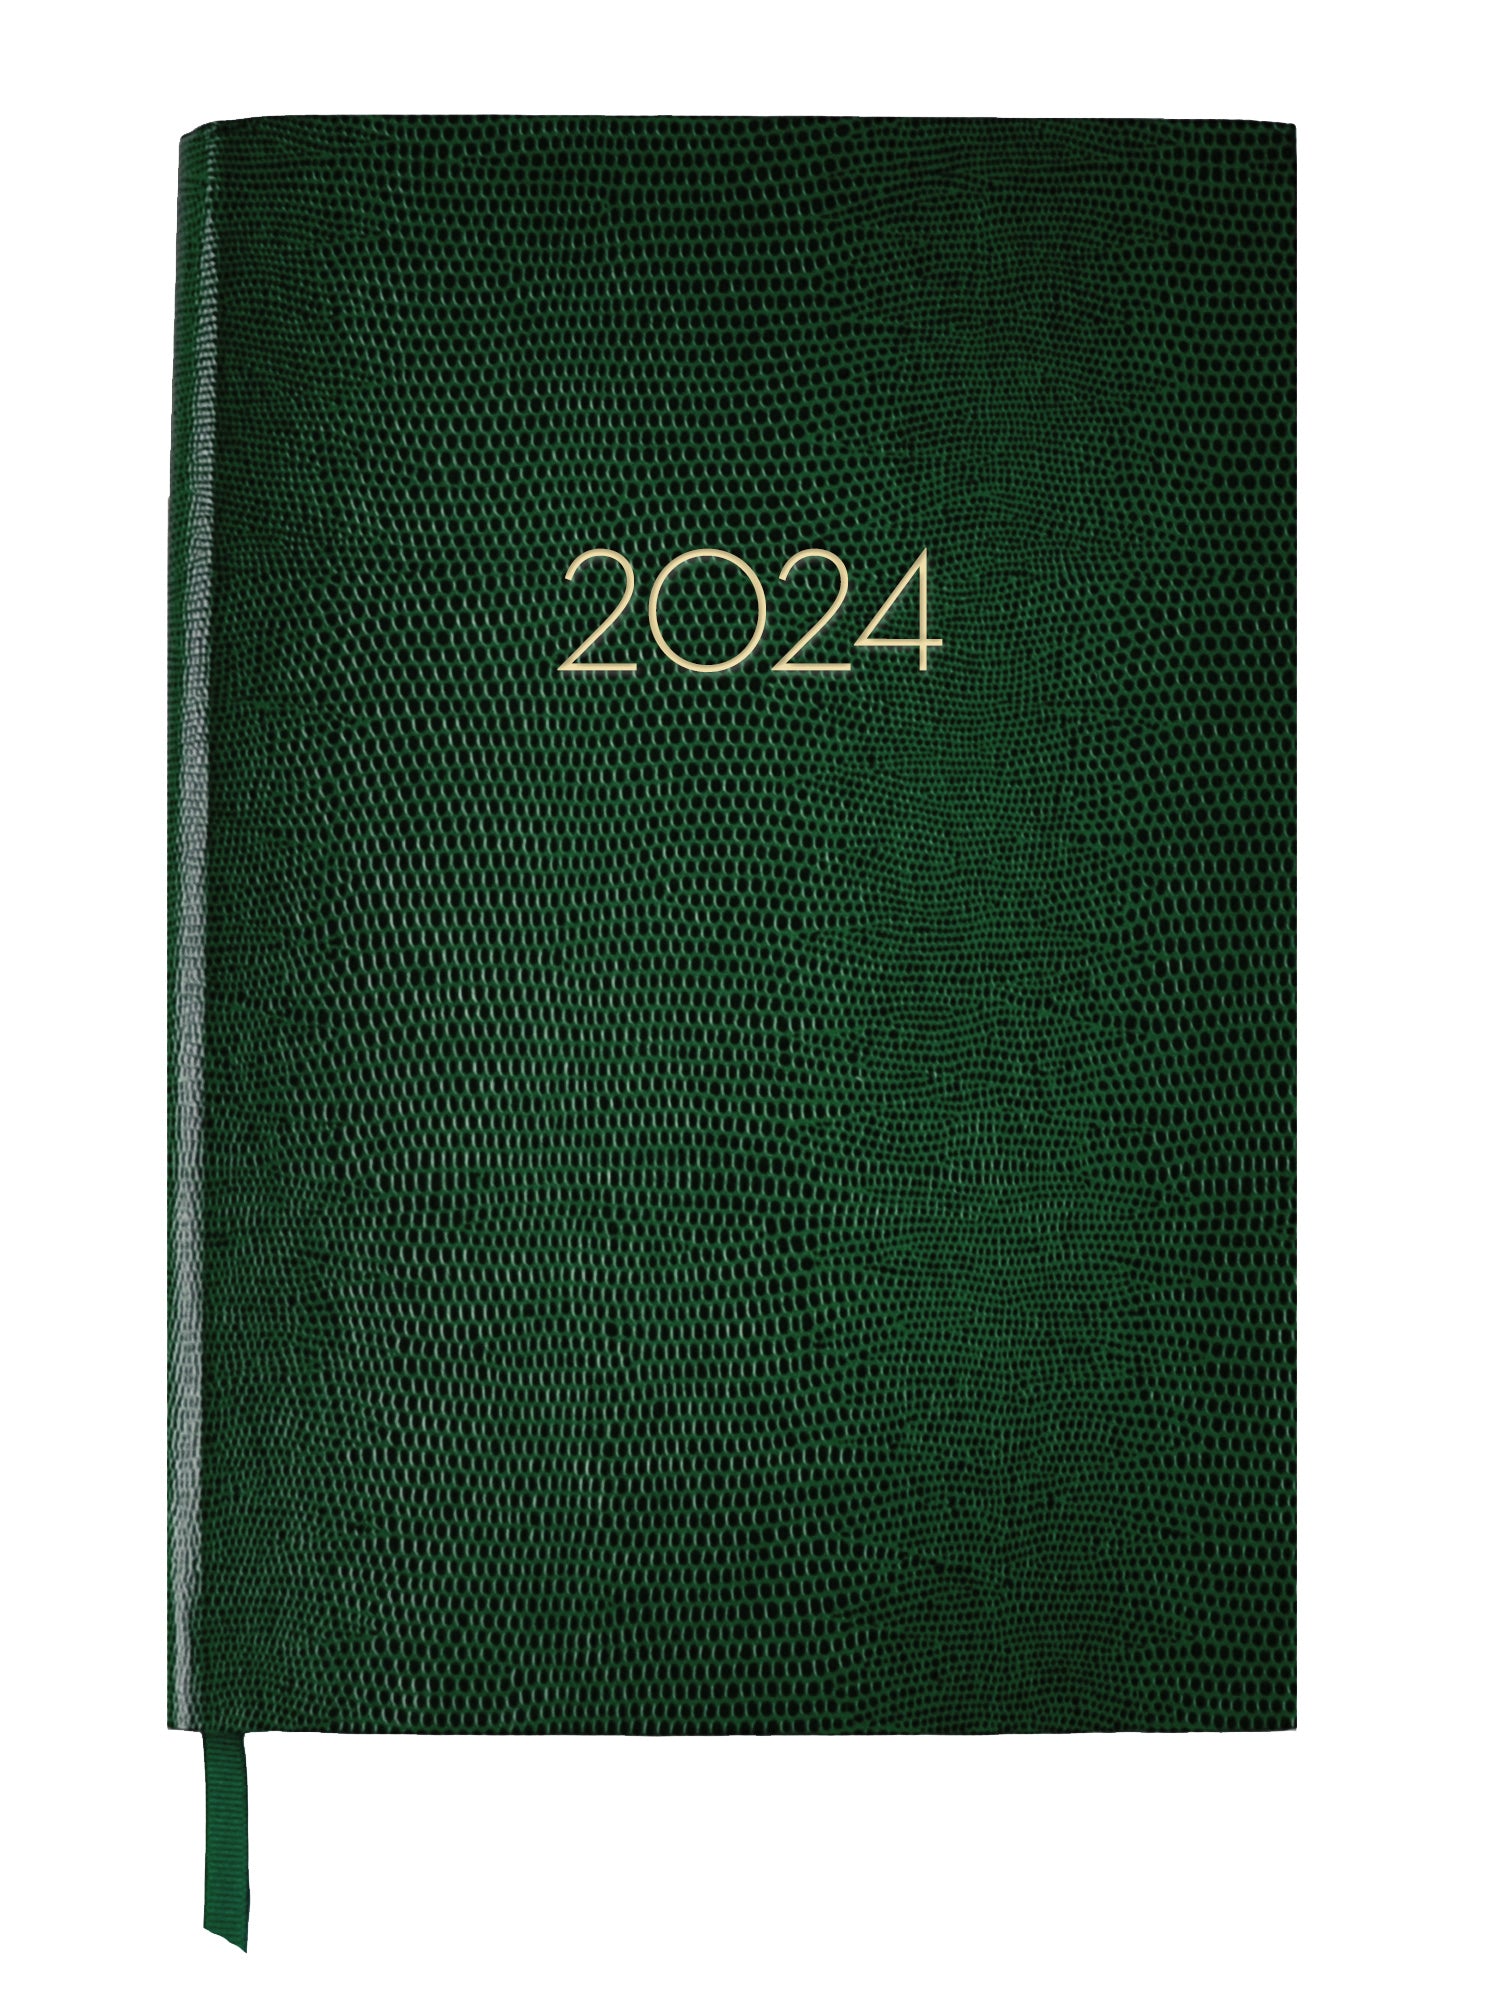 2024 DIARY GREEN Sloane Stationery